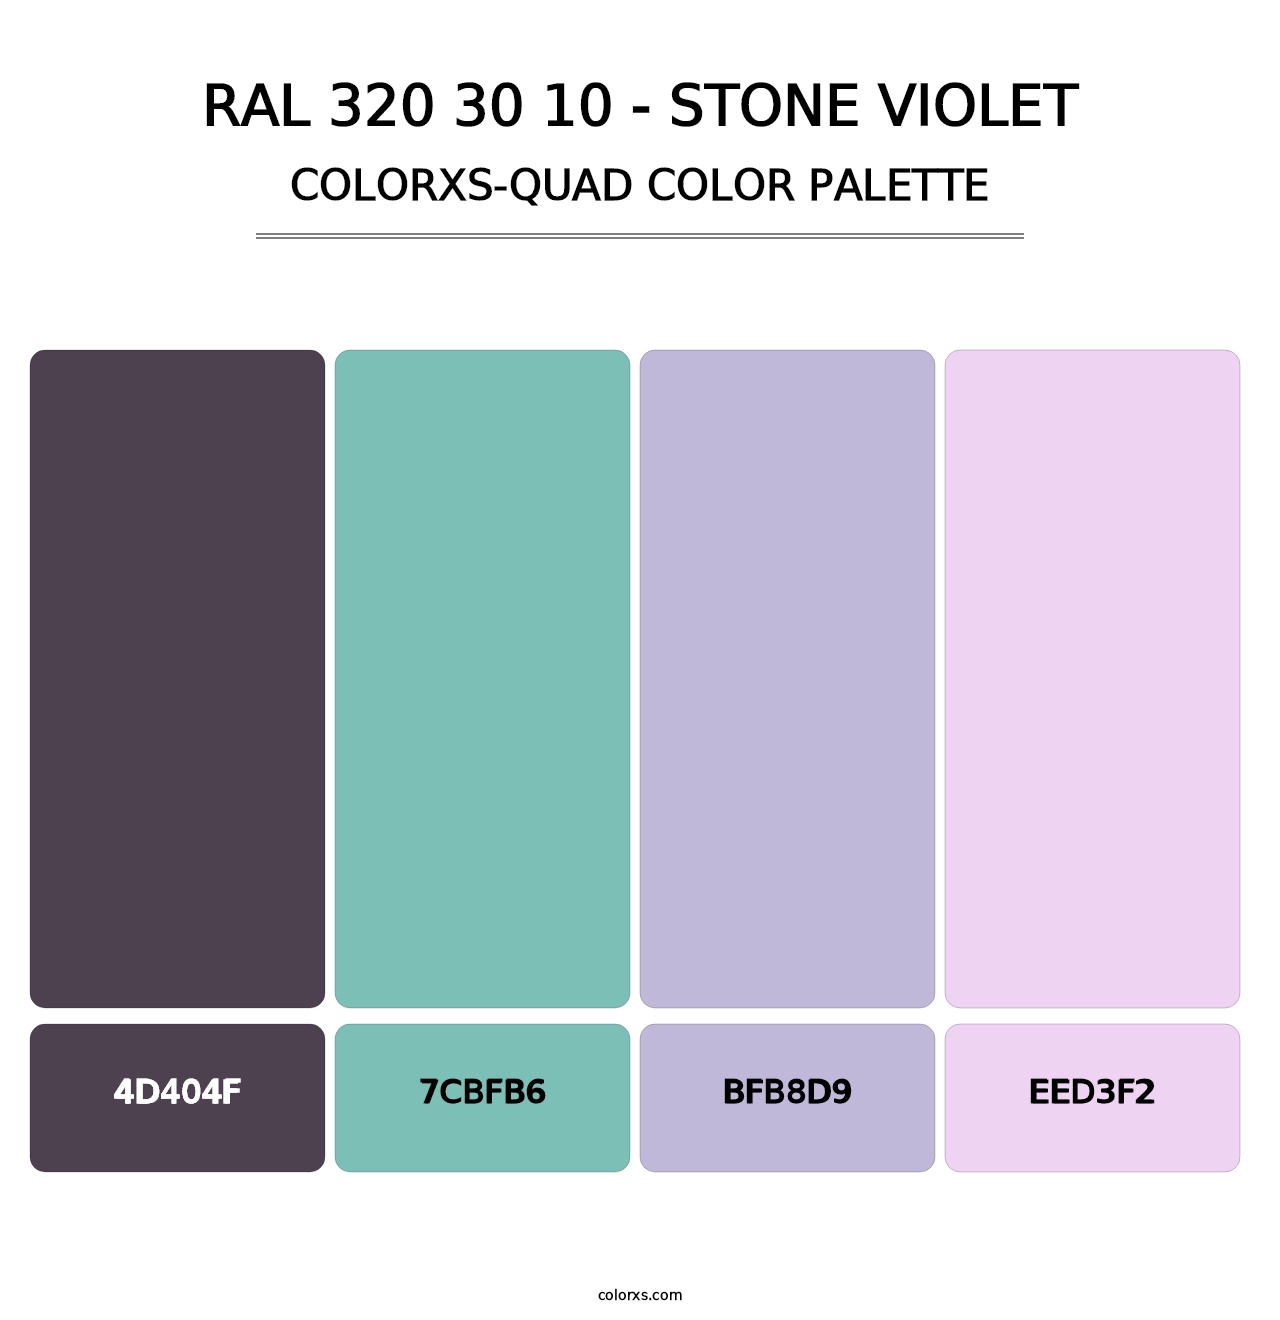 RAL 320 30 10 - Stone Violet - Colorxs Quad Palette